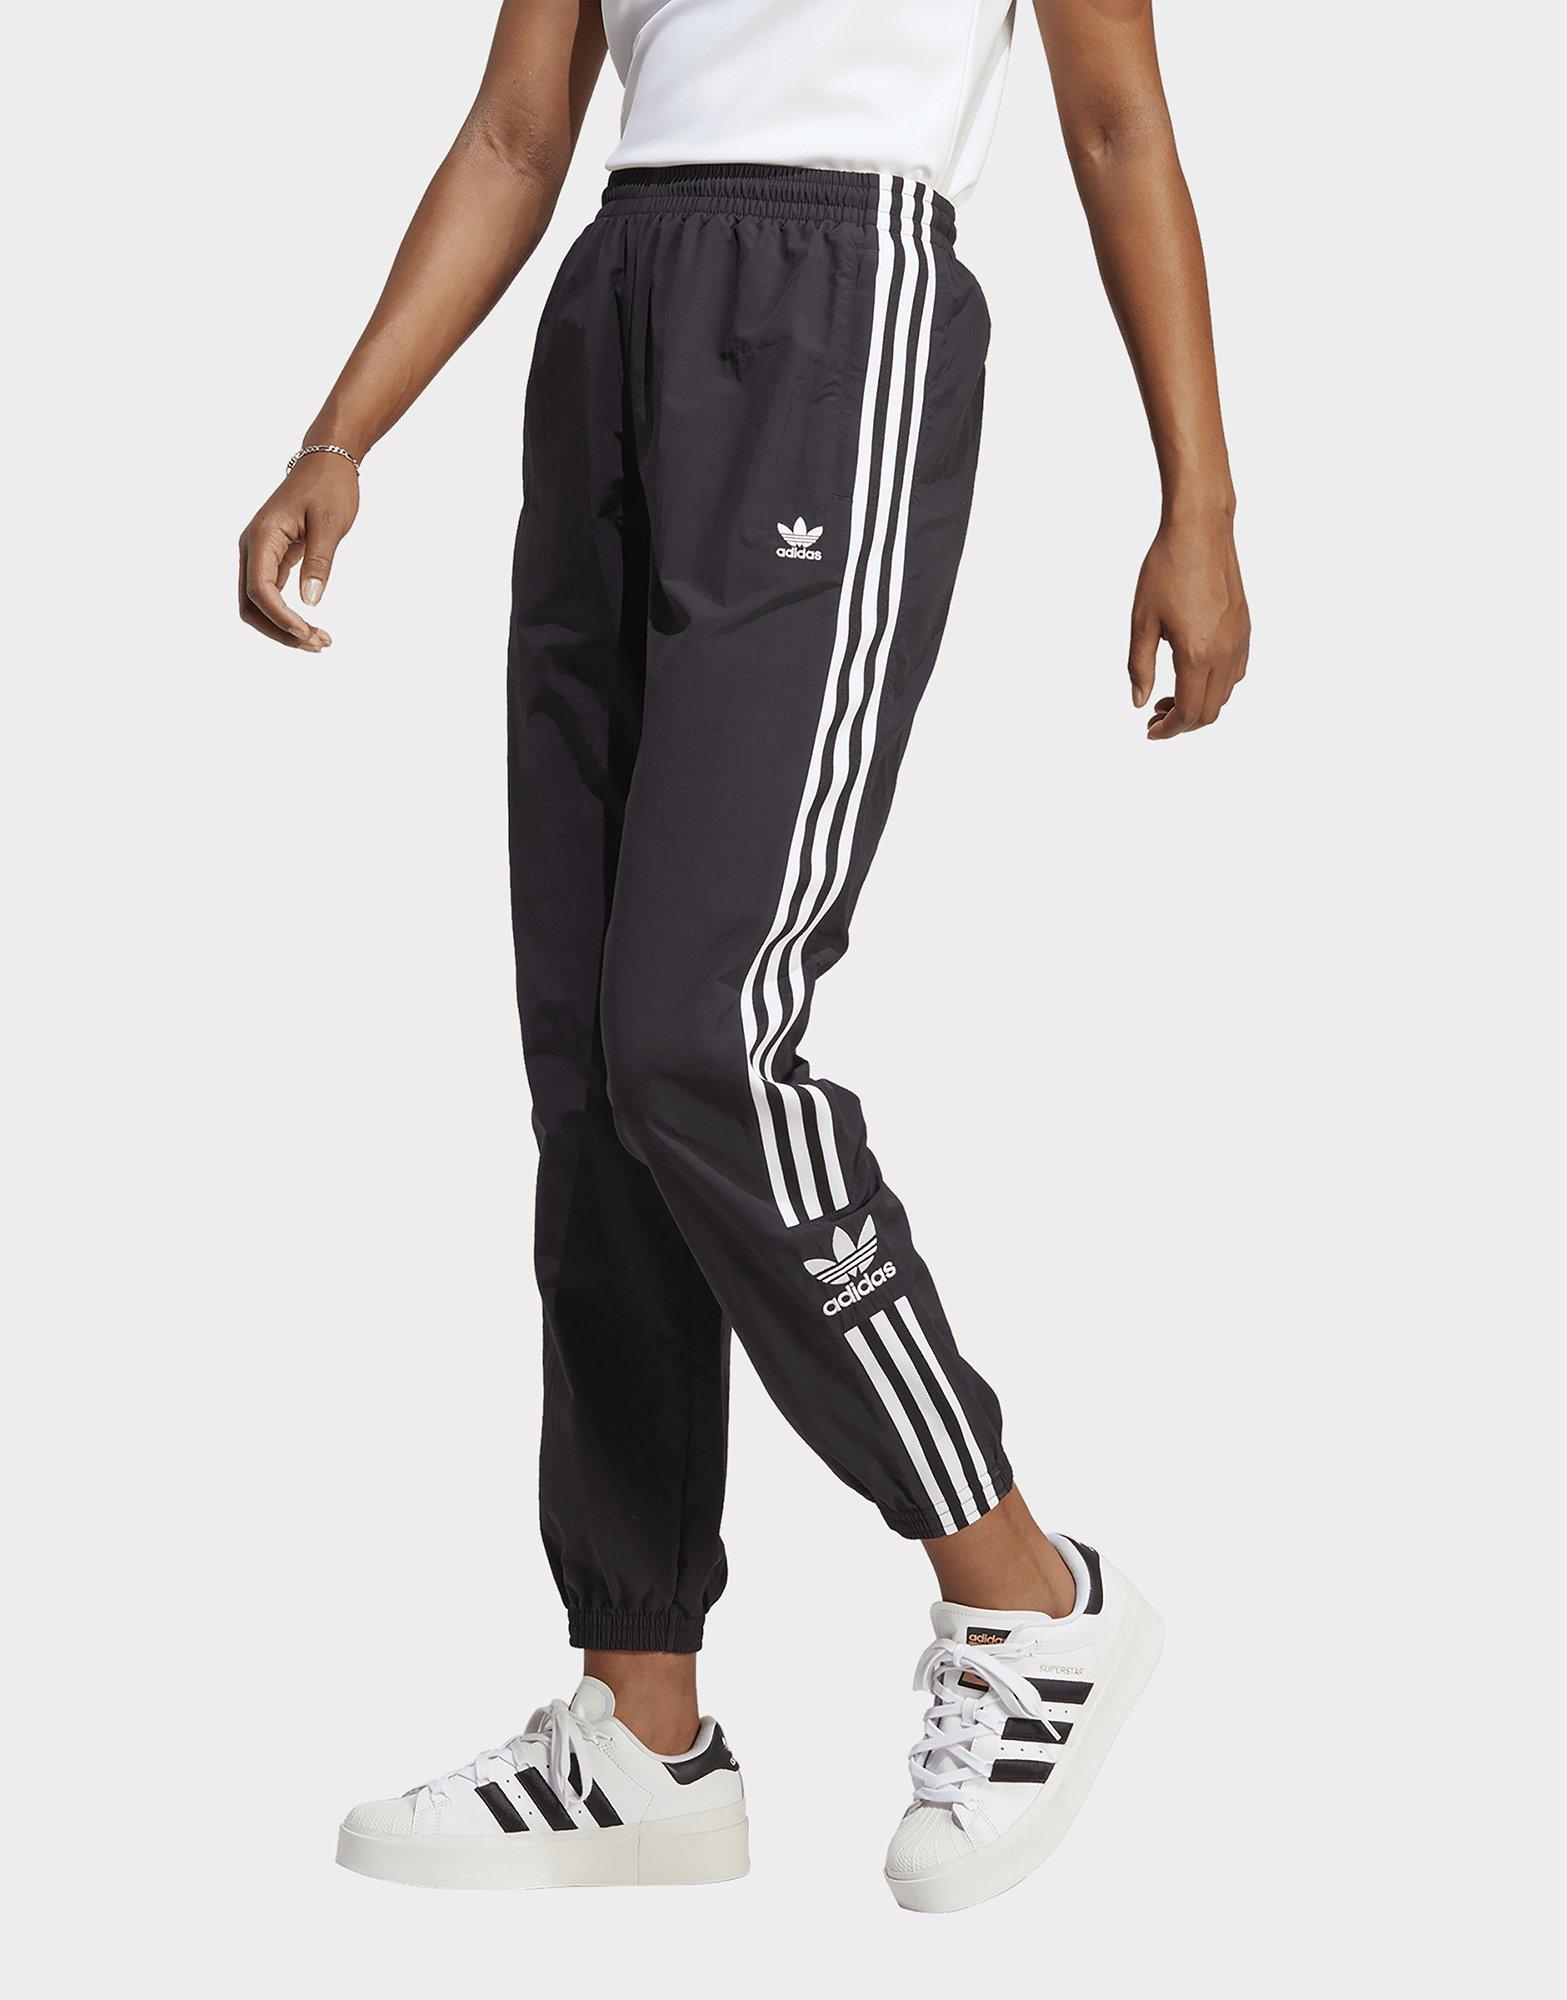 Adidas Originals Adicolor Locked Up Logo Leggings In Black for Women